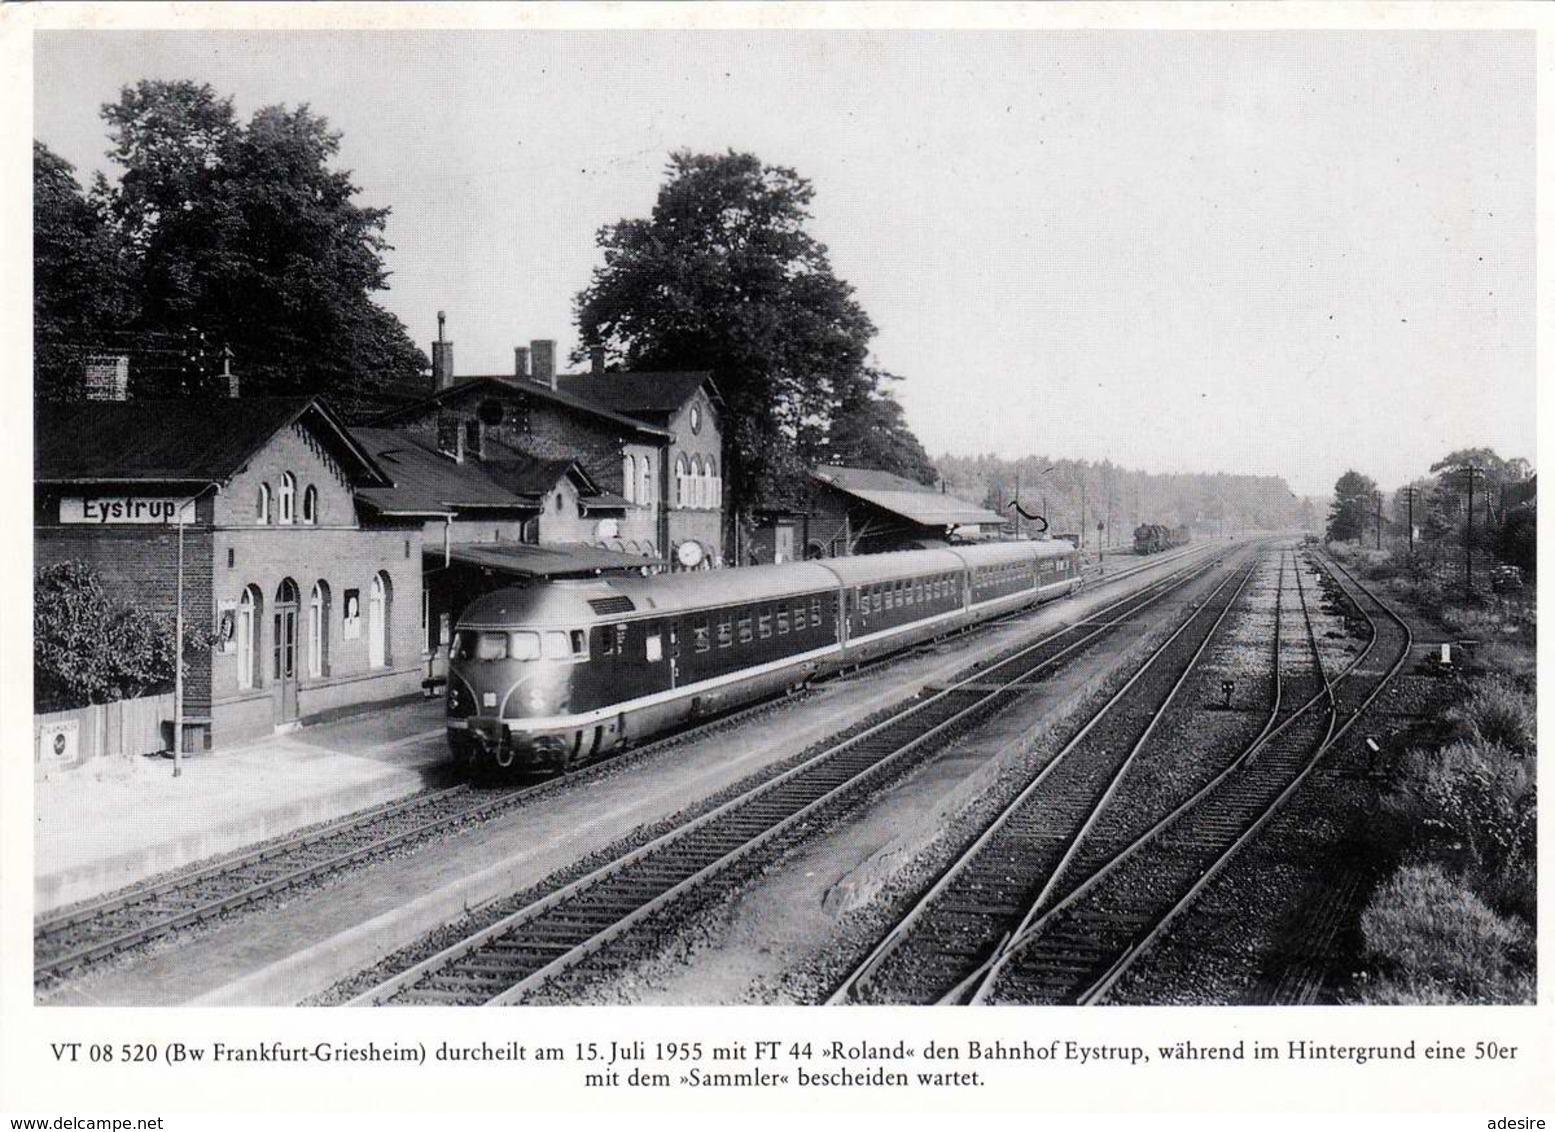 EYSTRUP - Bahnhof, Bw Frankfurt-Griesheim Durcheilt Den Bahnhof Eystrup - Bahnhöfe Mit Zügen